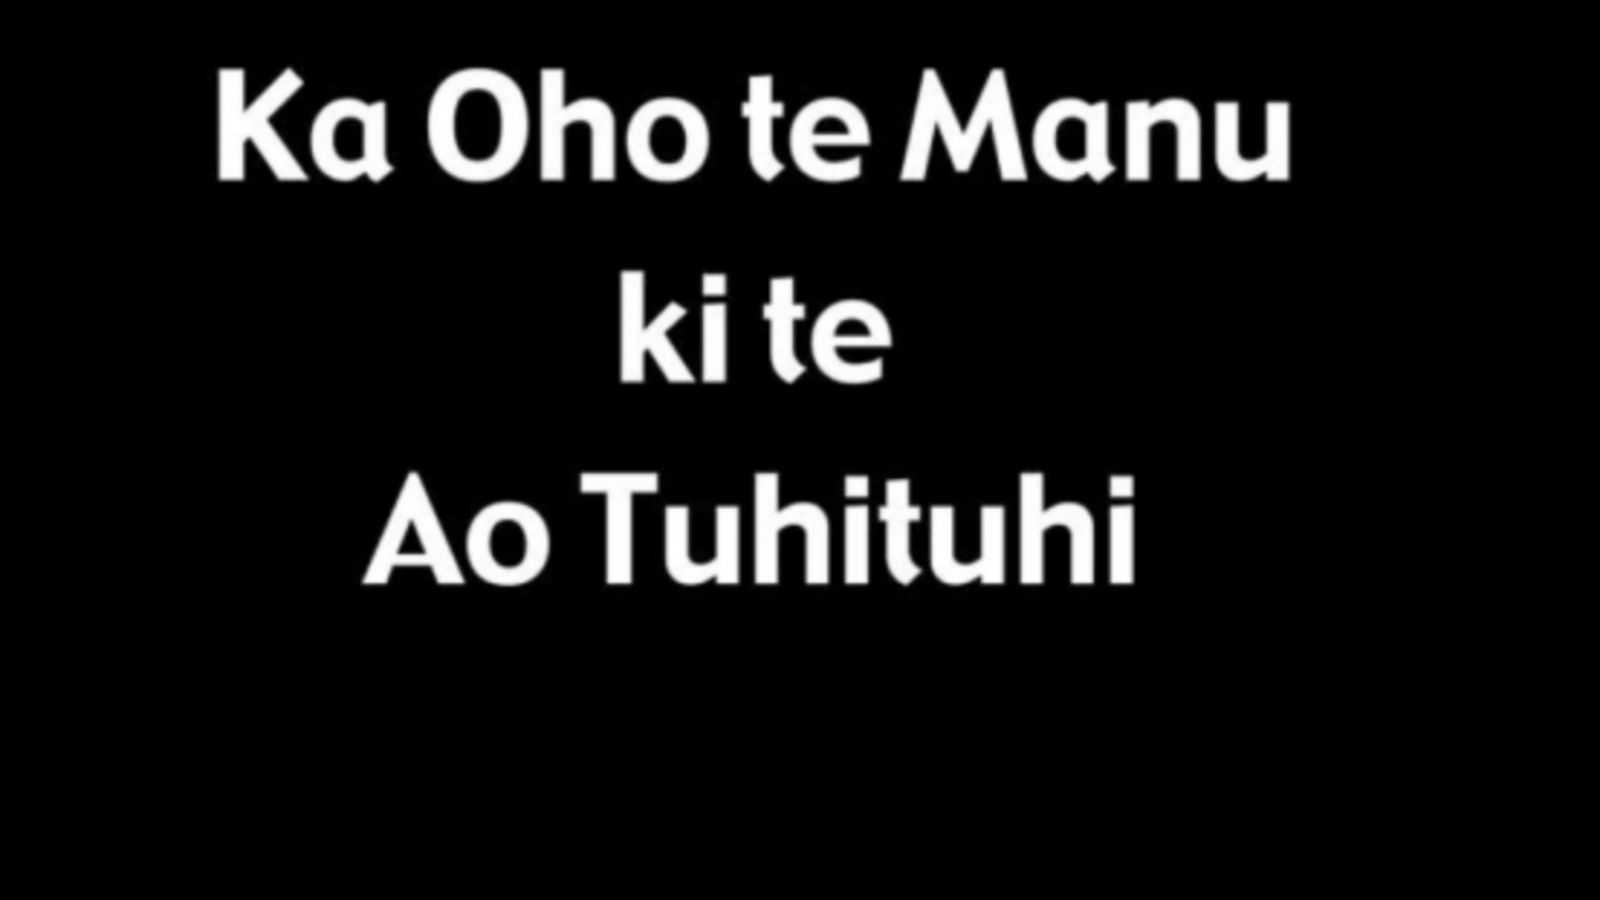 A black image with white text that reads, Ka Oho te Manu ki te Ao Tuhiluhi.